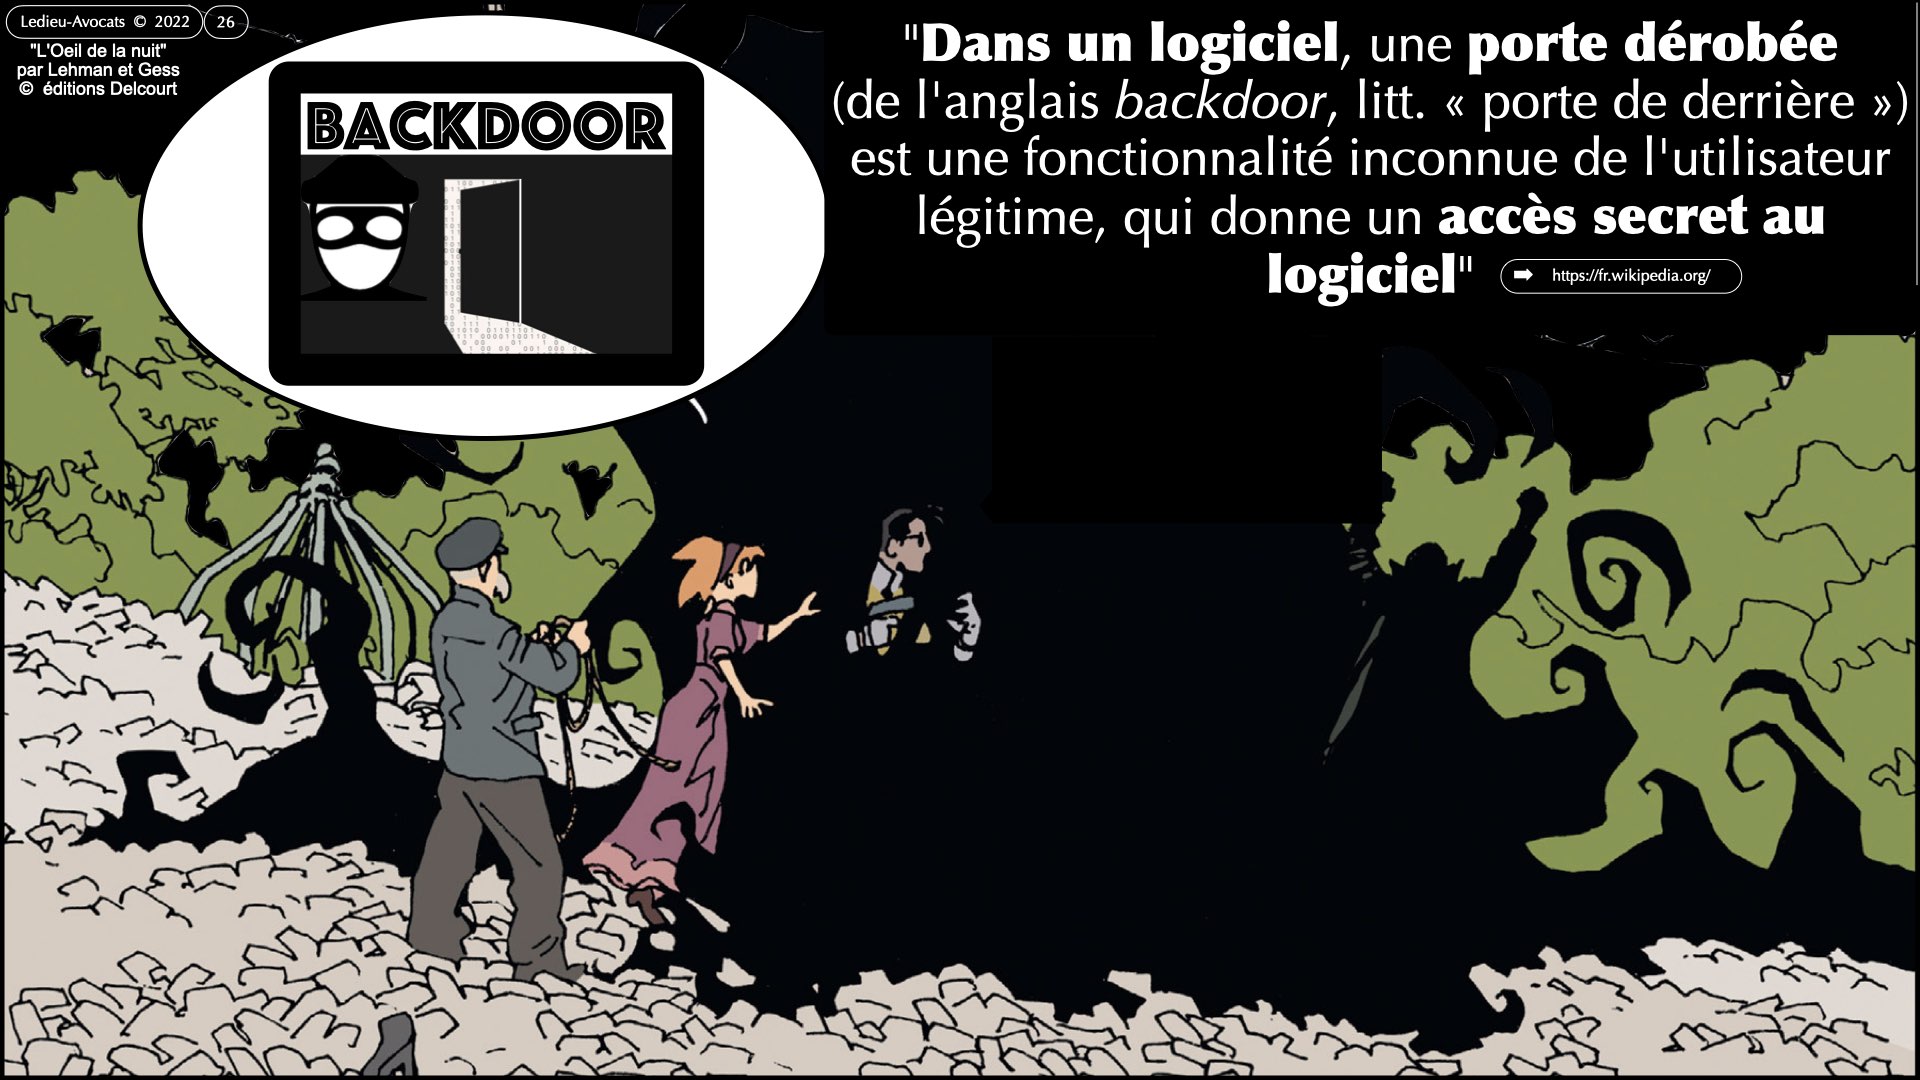 #522 la menace cyber expliquée aux Experts-Comptables ECF Ile de France 30 novembre 2023 © Ledieu-Avocats 2023.026